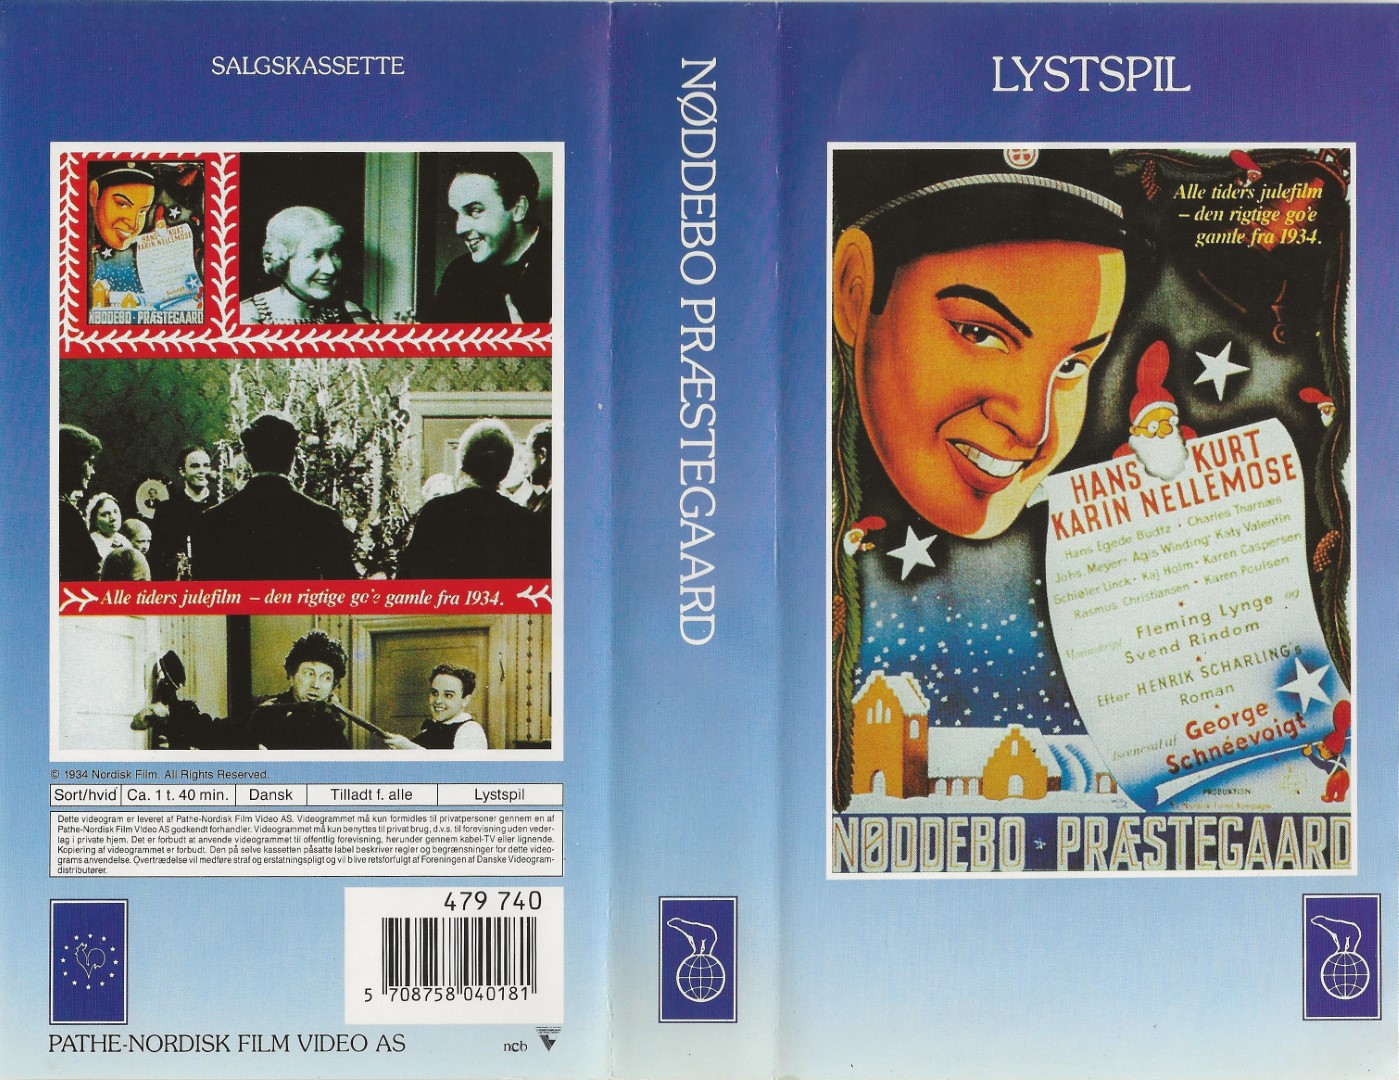 Nøddebo Præstegaard  VHS Nordisk Film 1934